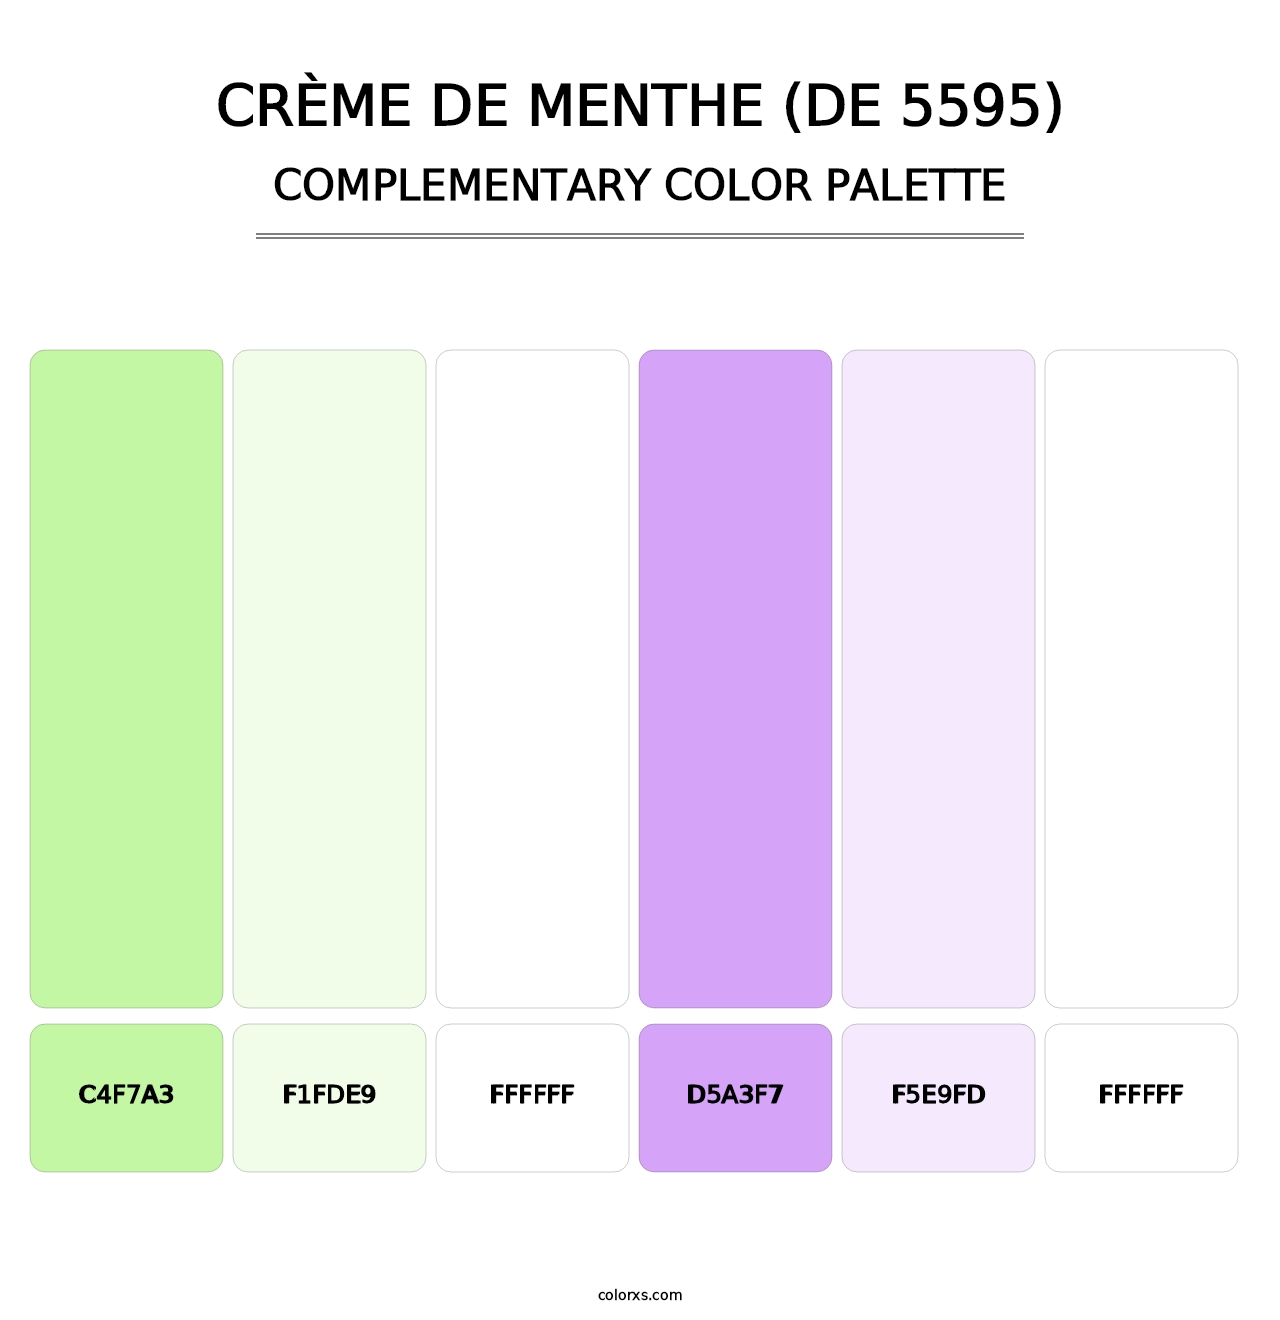 Crème de Menthe (DE 5595) - Complementary Color Palette